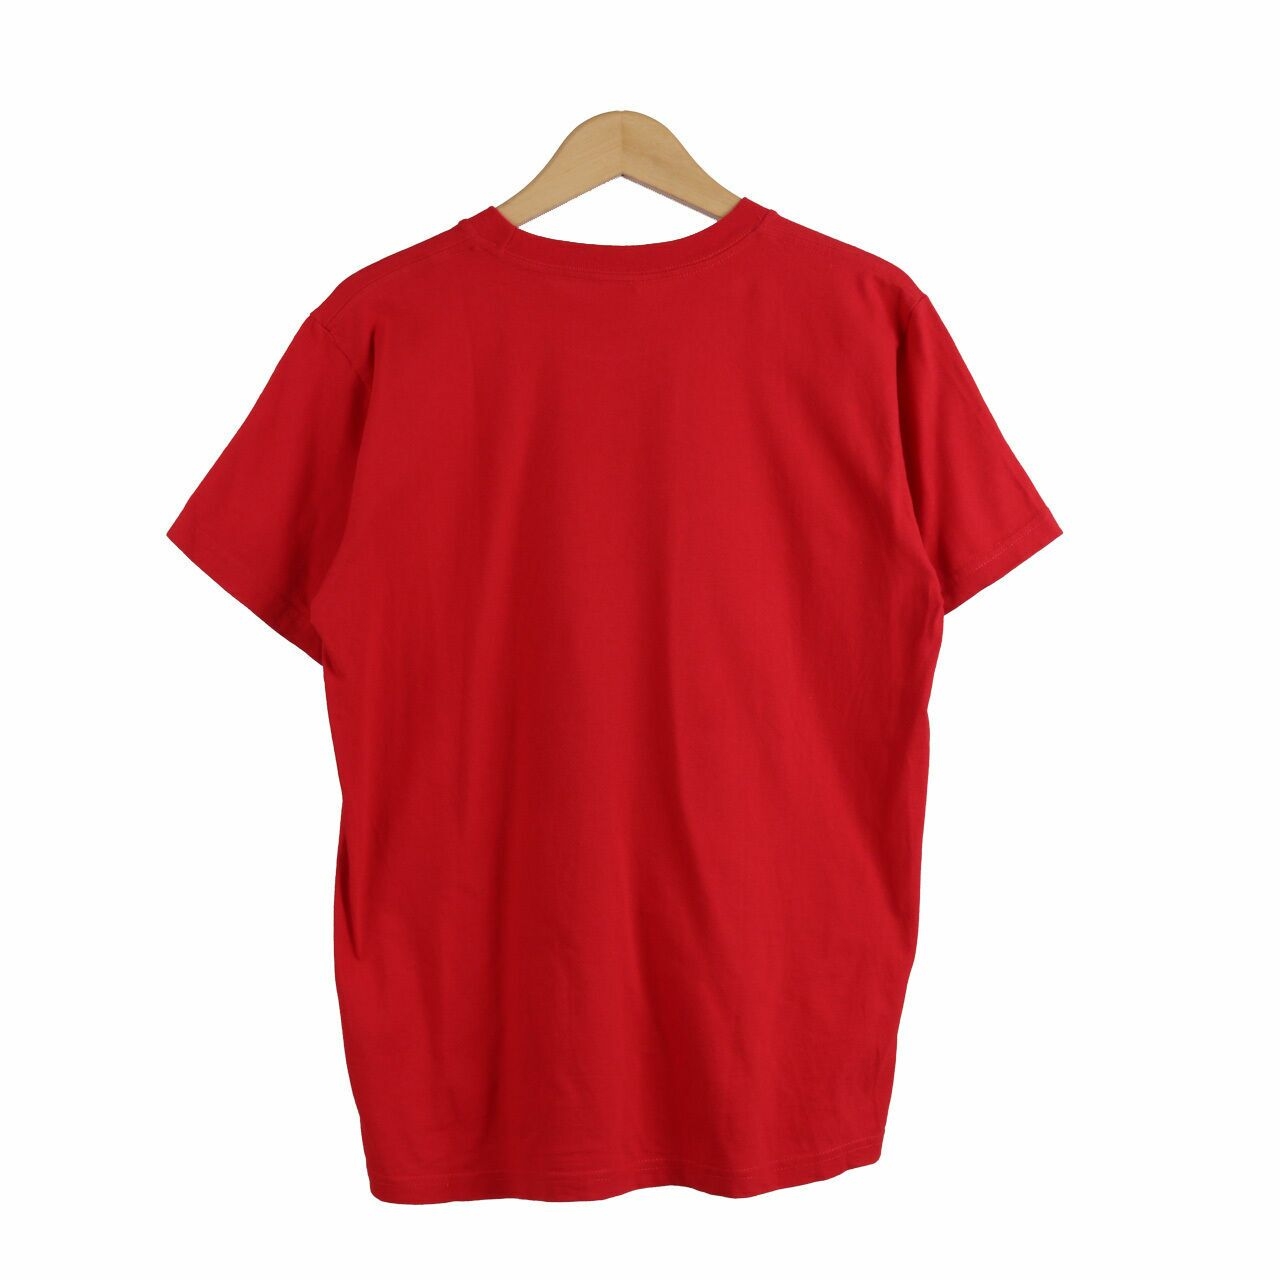  Supreme Red Tshirt